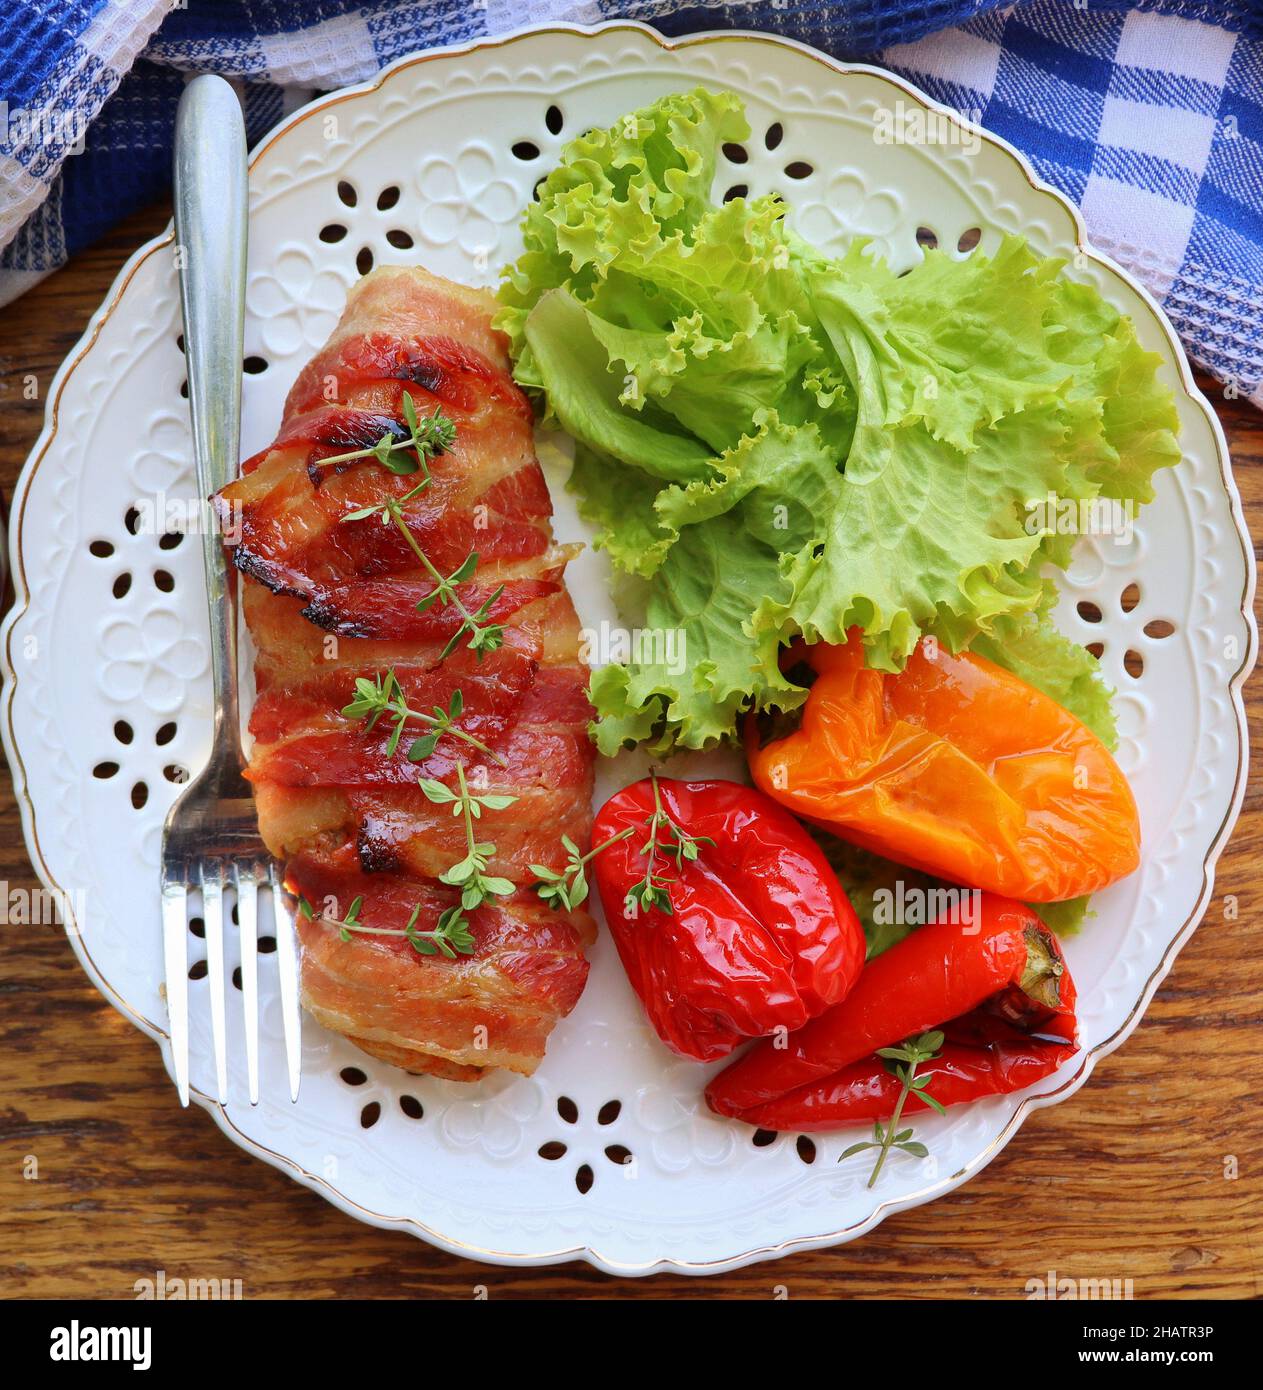 Arrière-plan du dîner.Blanc de poulet grillé enveloppé de bacon dans une poêle sur une table rustique en bois.Vue de dessus Banque D'Images